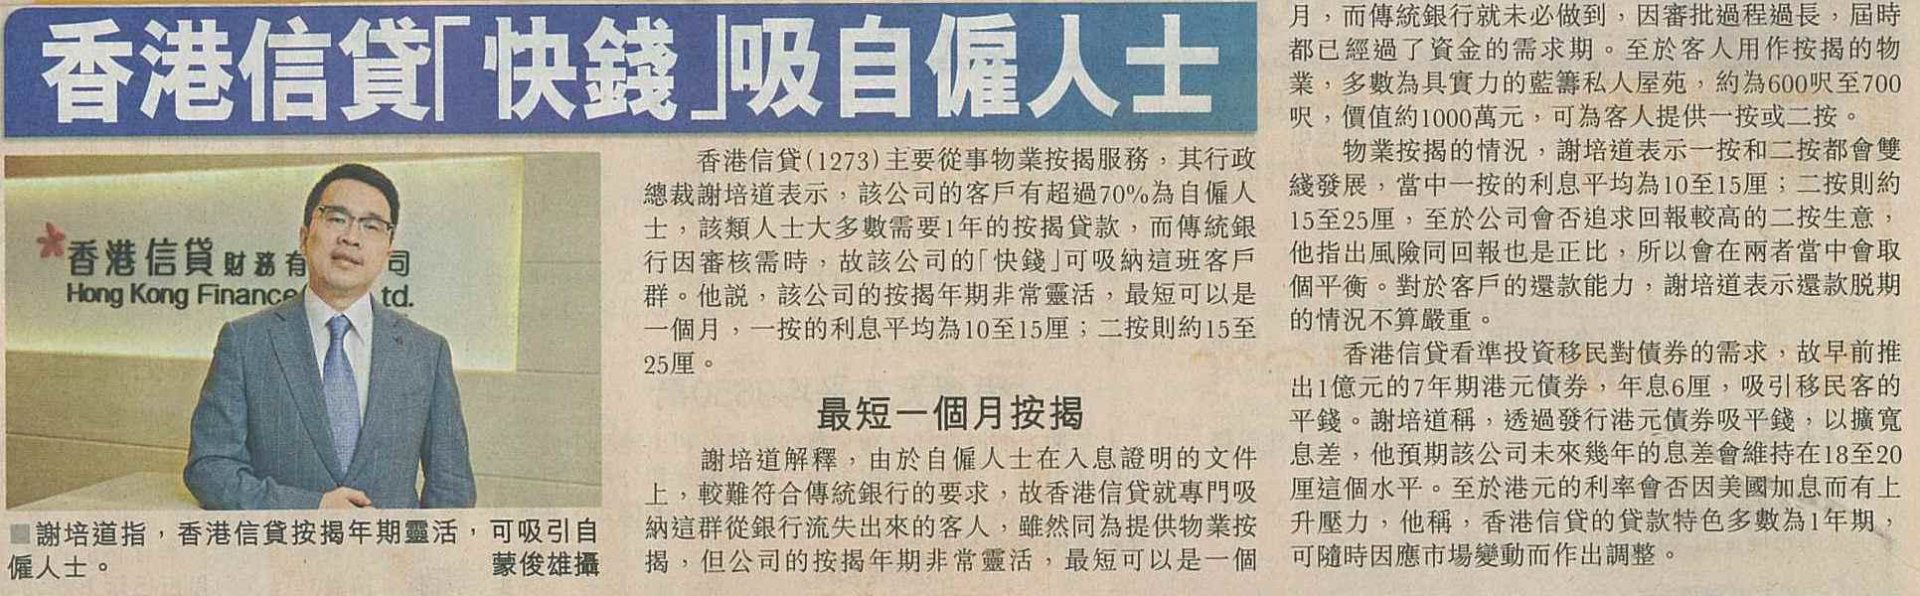 星島日報：「香港信貸 快錢吸自僱人士」